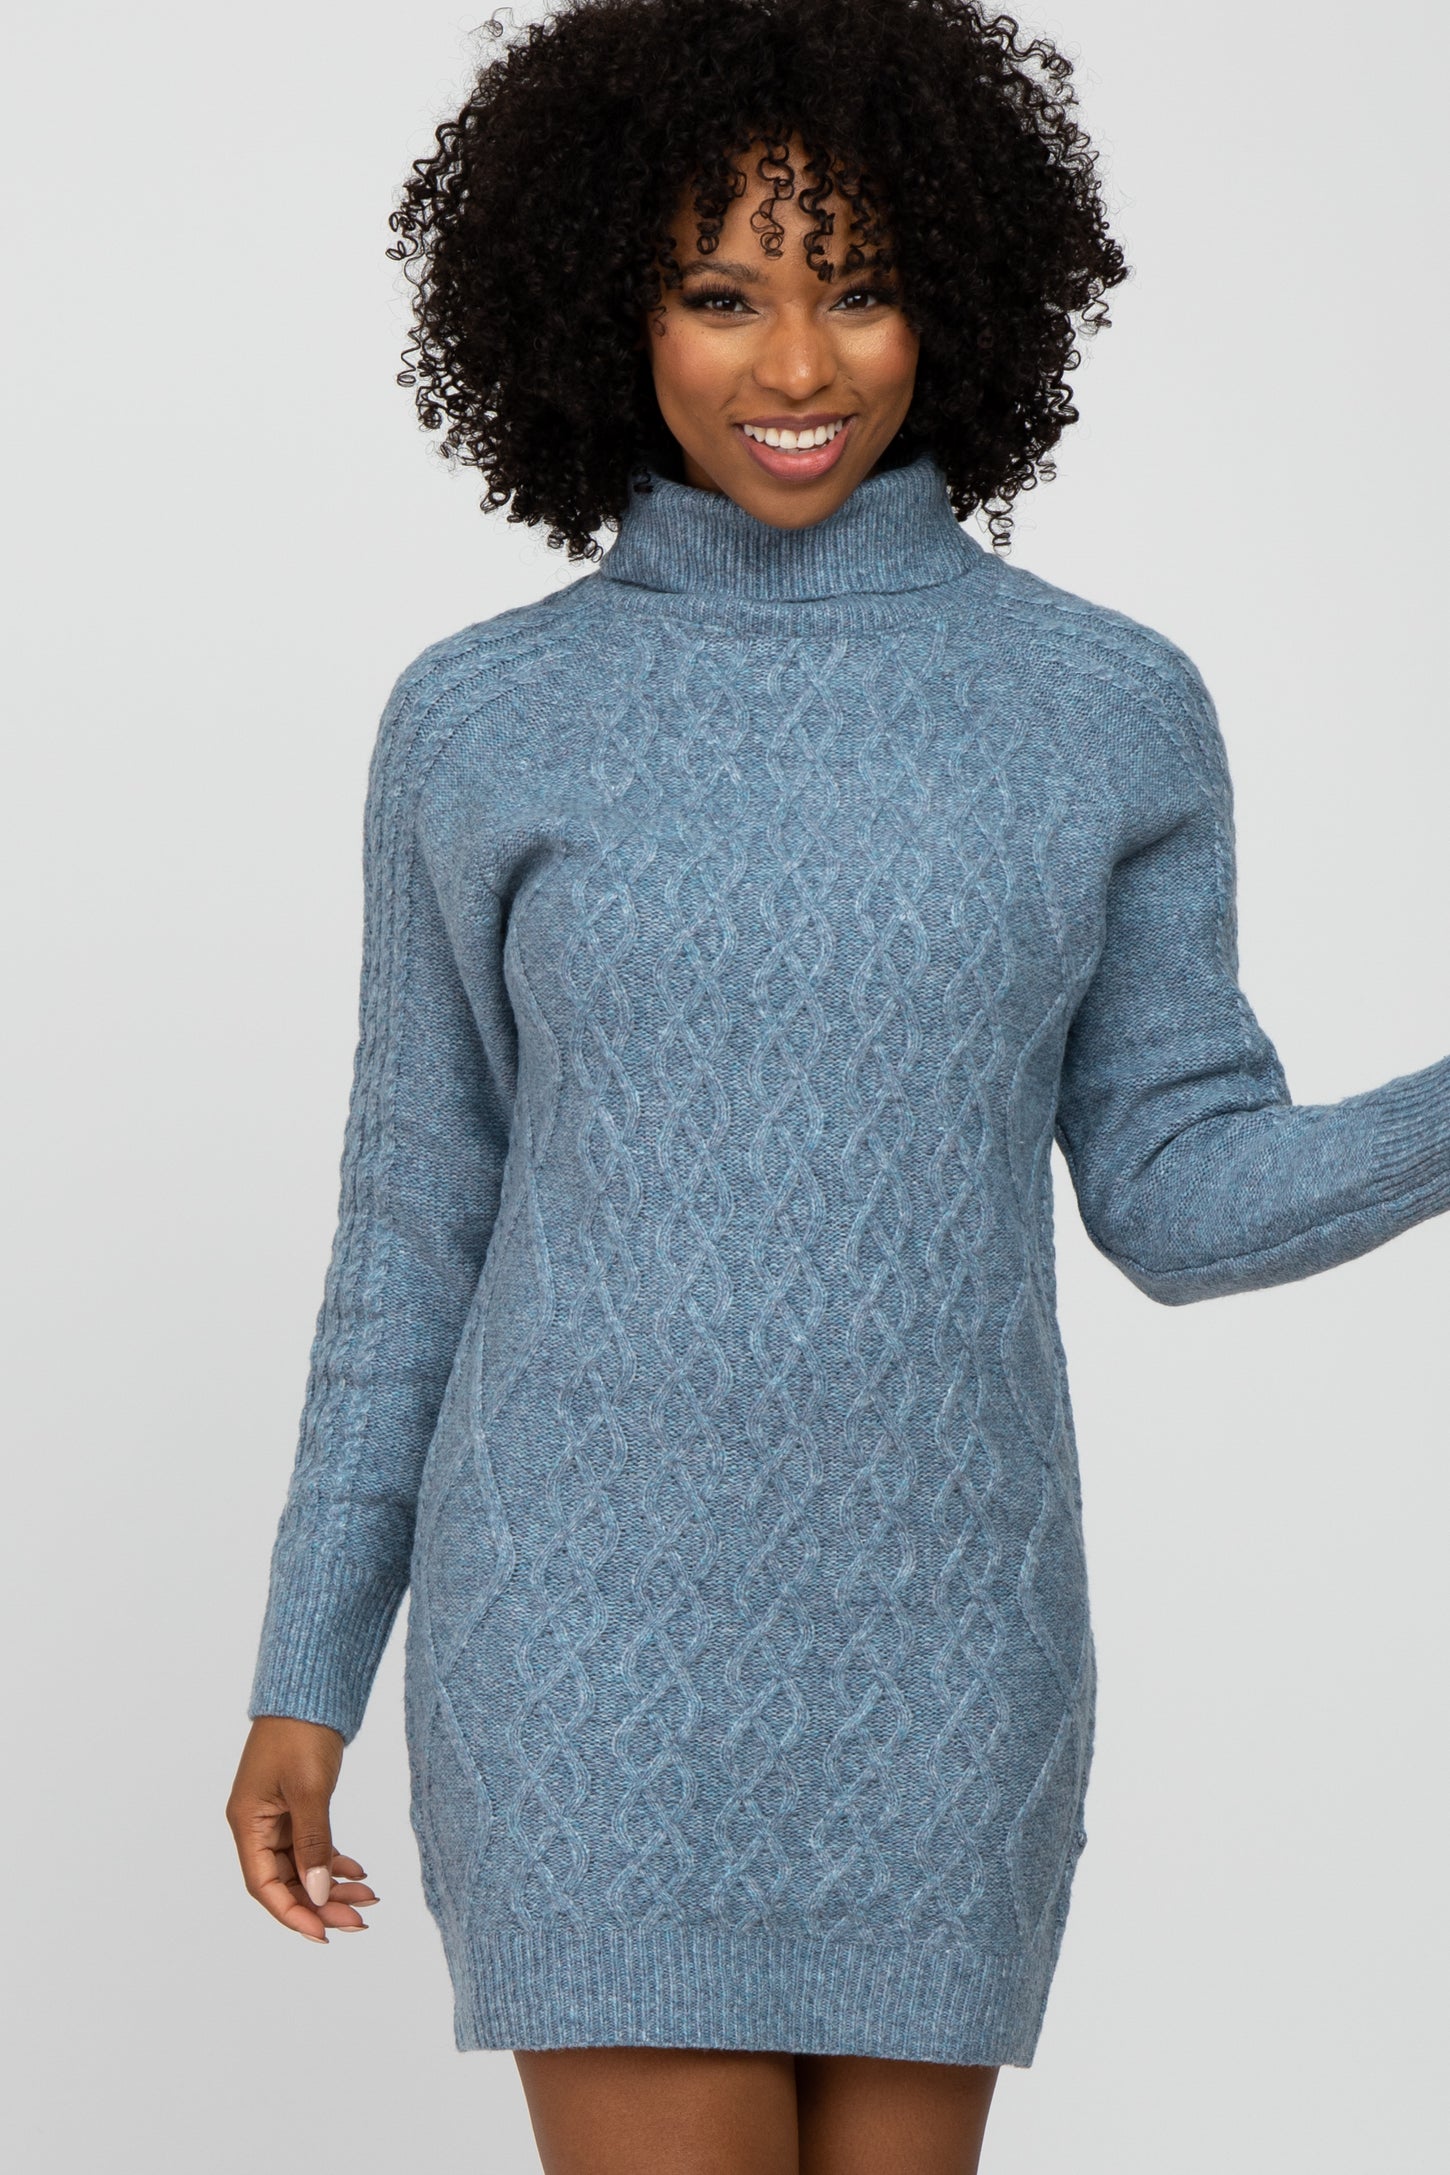 light blue sweater dress